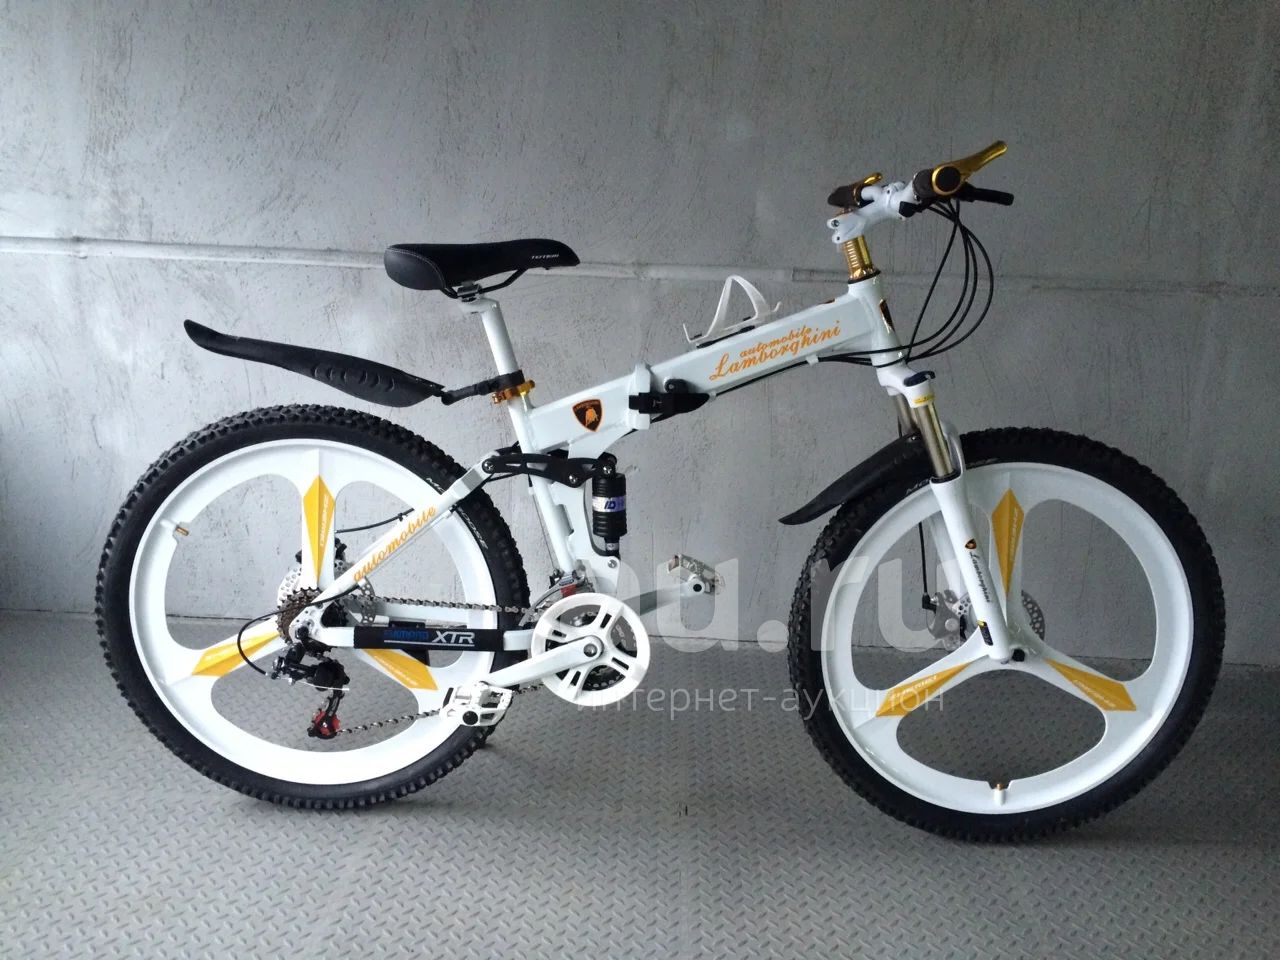 Взрослый велосипед белый. Велосипед Ламборджини скоростной. Велосипед Ламборджини белый. Велосипед Ламборджини взрослый. Горный велосипед Ламборджини.